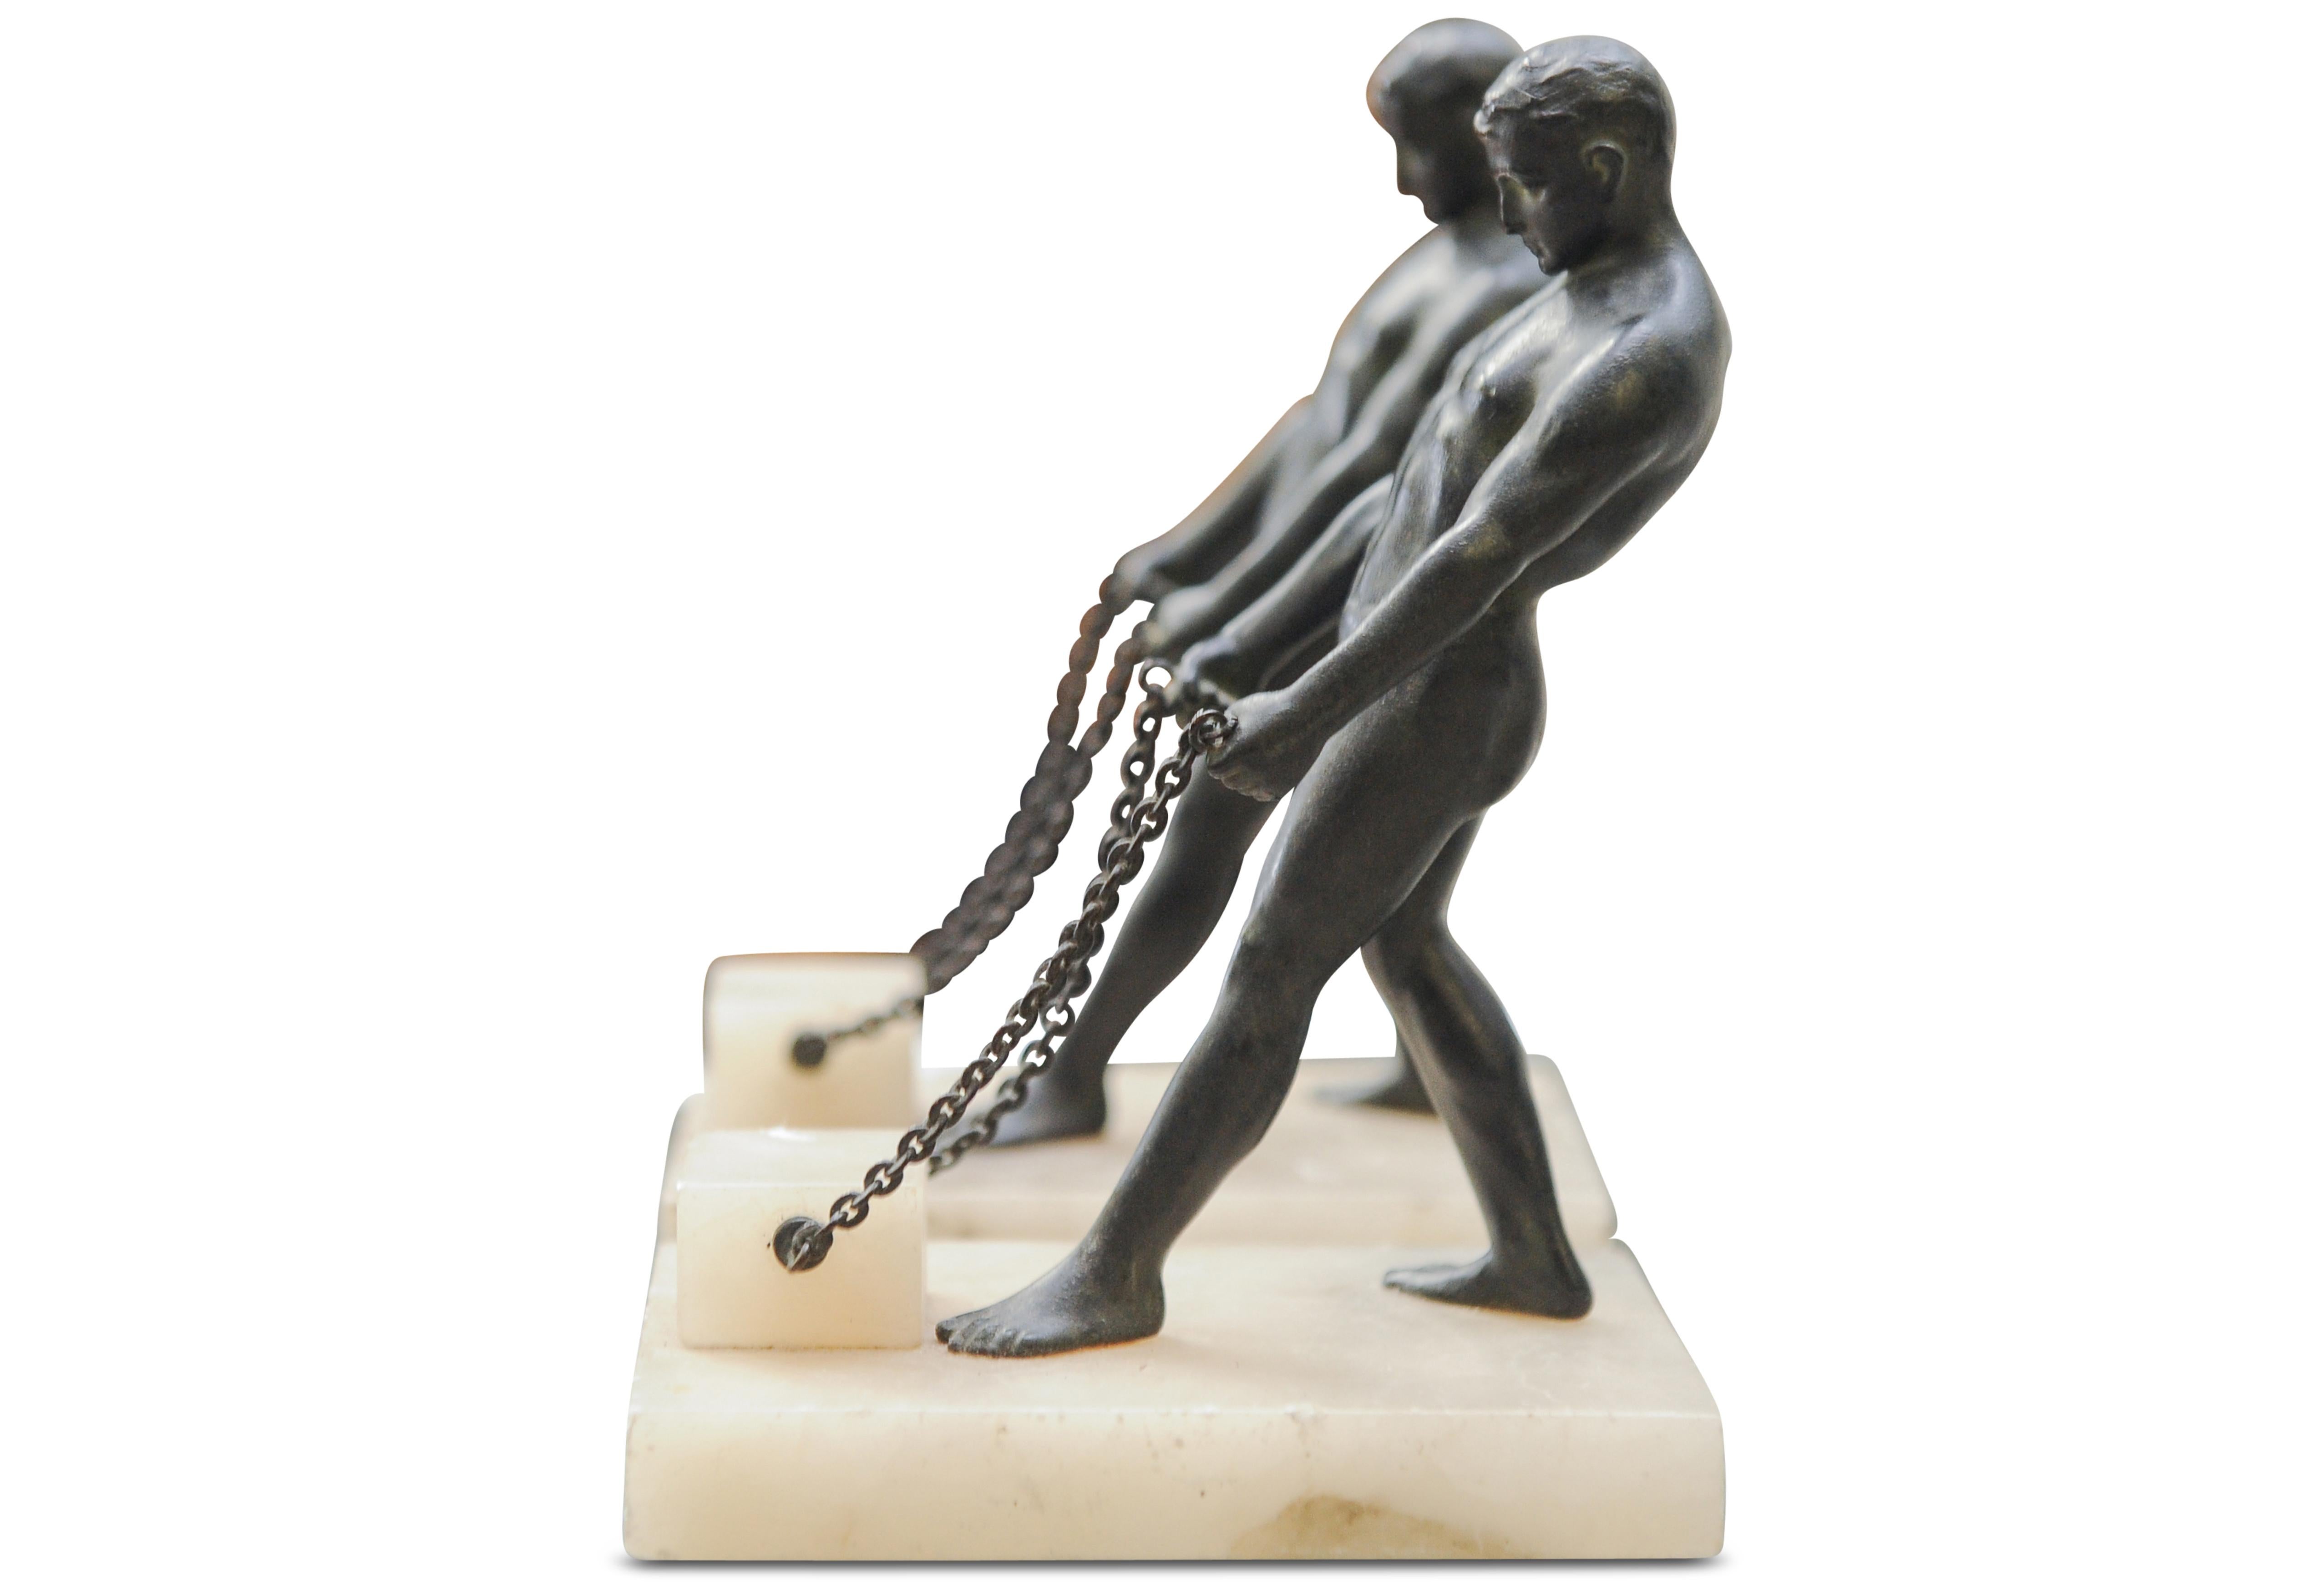 Une paire étonnante et inhabituelle de figurines masculines grecques en bronze de Grand Tour assorties sur des bases en albâtre.

Le Grand Tour était la coutume, principalement du XVIIe au début du XIXe siècle, d'un voyage traditionnel à travers